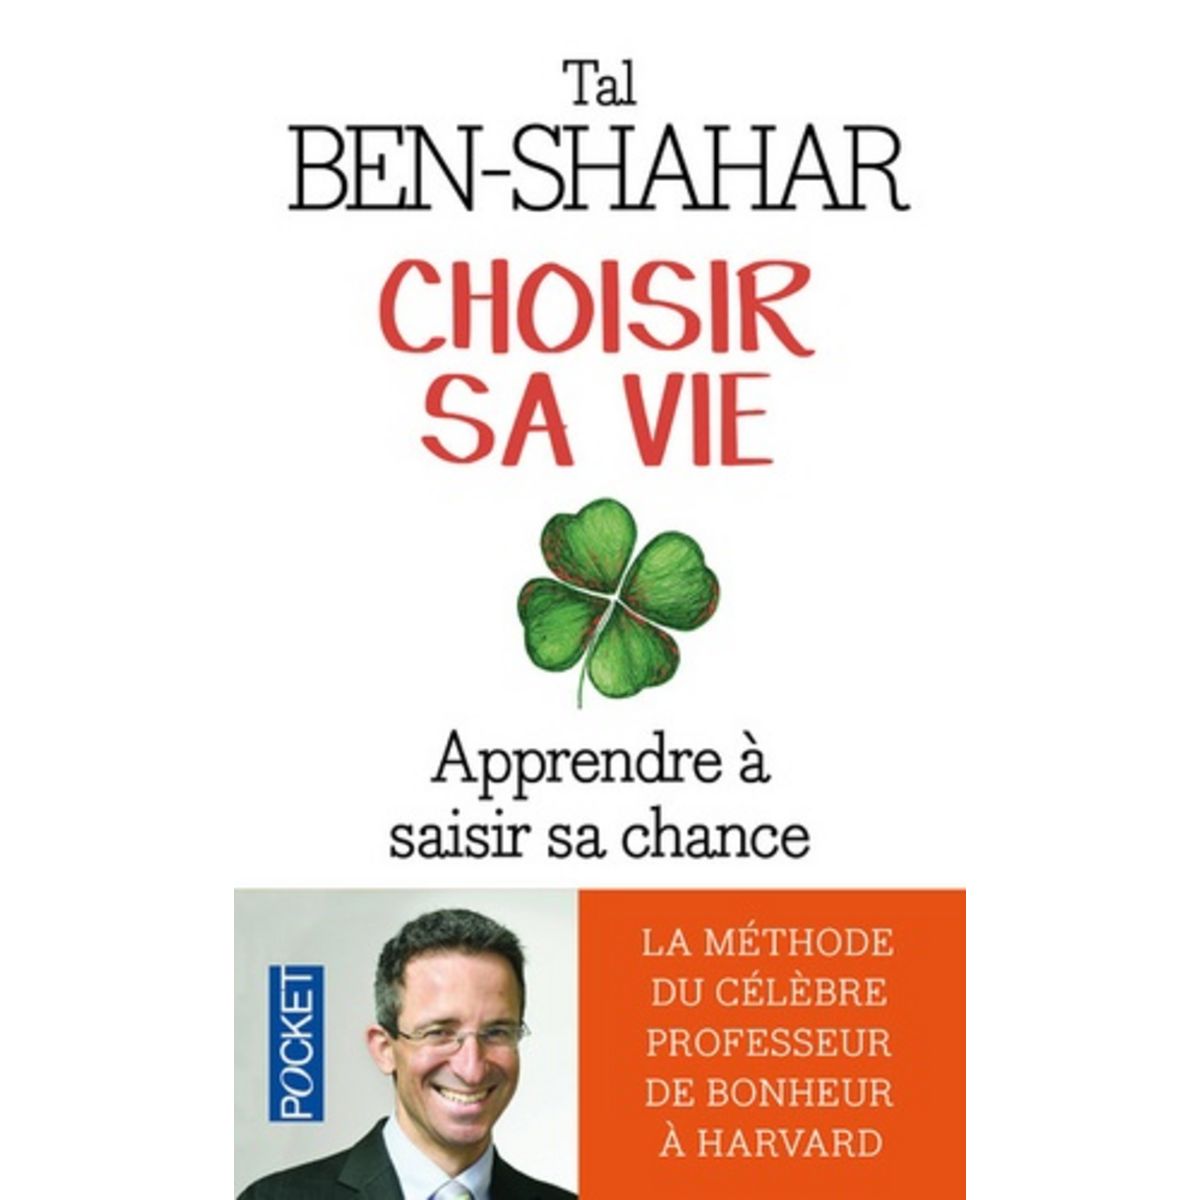  CHOISIR SA VIE. 100 EXPERIENCES POUR SAISIR SA CHANCE, Ben-Shahar Tal